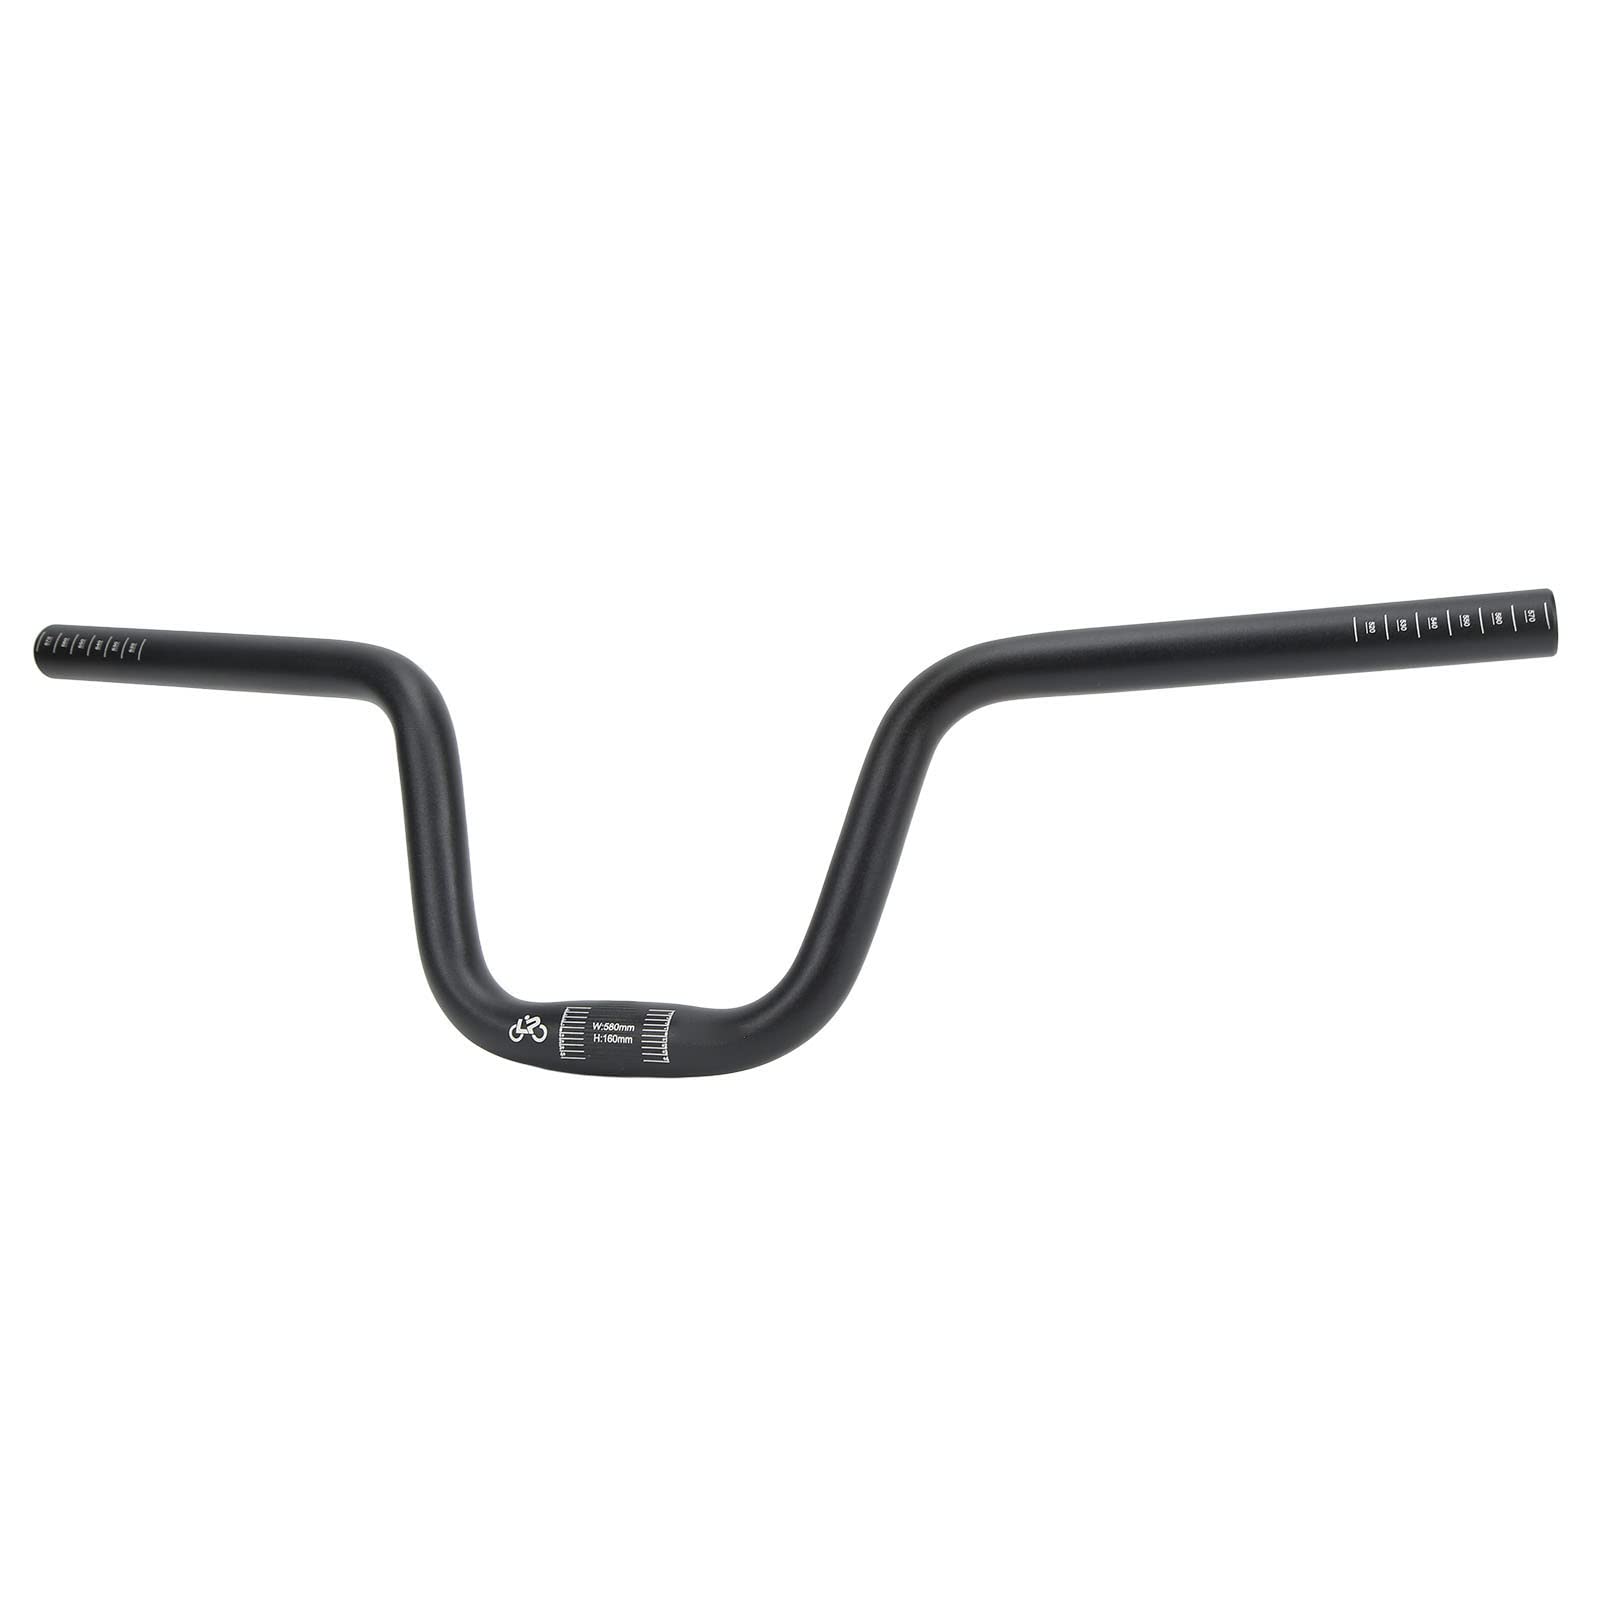 Fahrrad-Swallow-Lenker, Leichte und Elegante Aluminiumlegierung in Schwarz, 25,4 Mm Durchmesser, 22,8 Zoll Länge. Geeignet für Fahrräder (Heben Sie 160 mm an) von WGFOIP